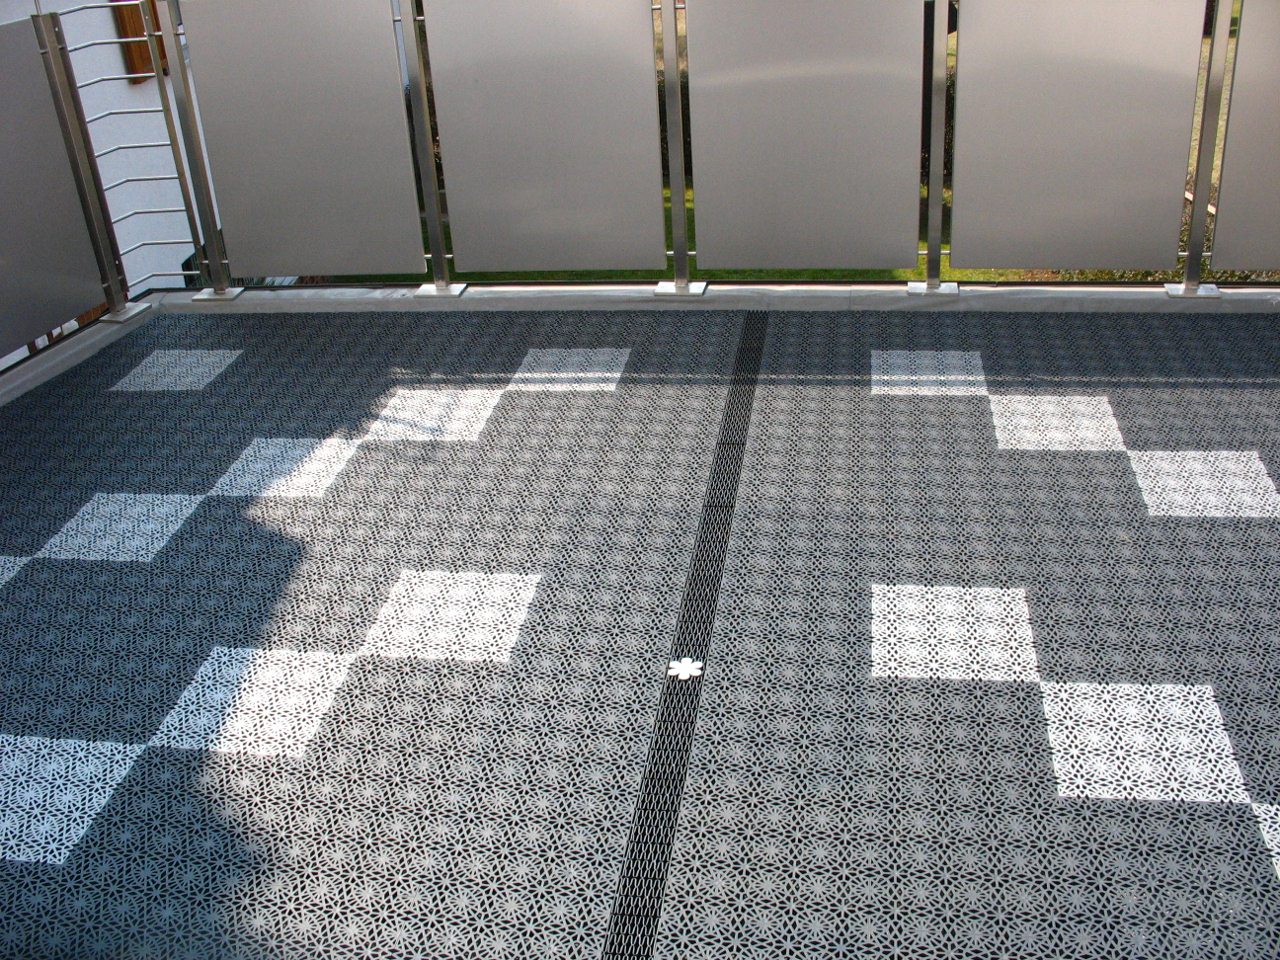 Balkon Bodenbelag grafithgrau und steingrau Bodenfliesen wetterfester UV-beständiger PP Kunststoff mit Klick Fliesen System